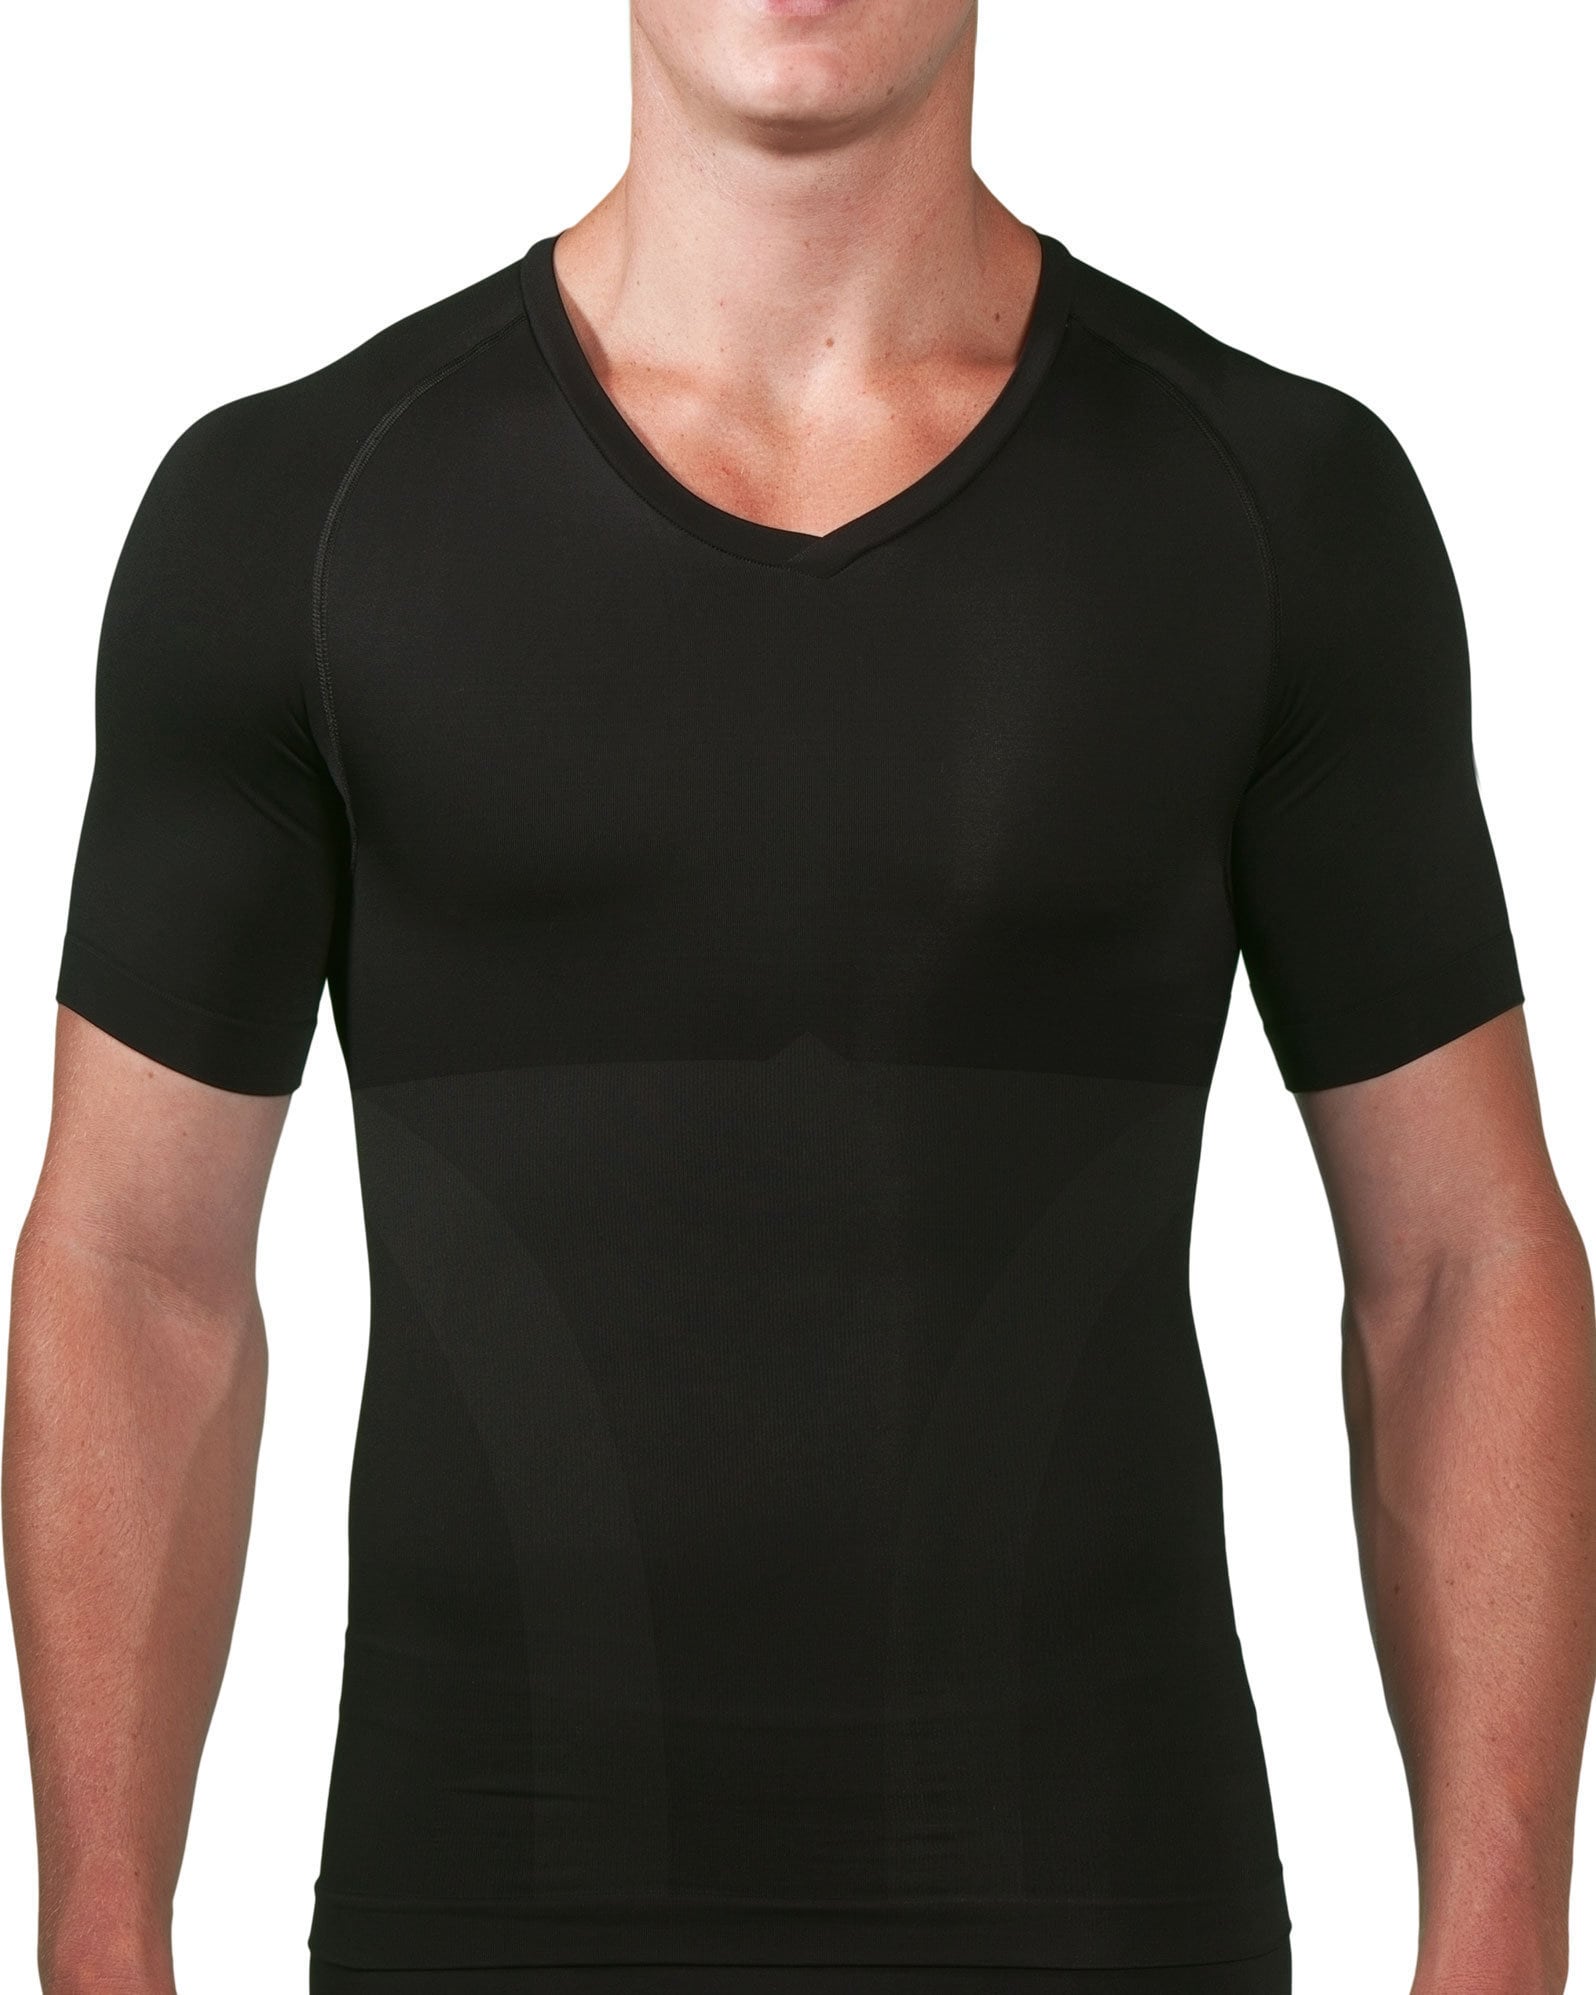 Knap'man Shop  Knap'man Compression Shirt V-Neck Black